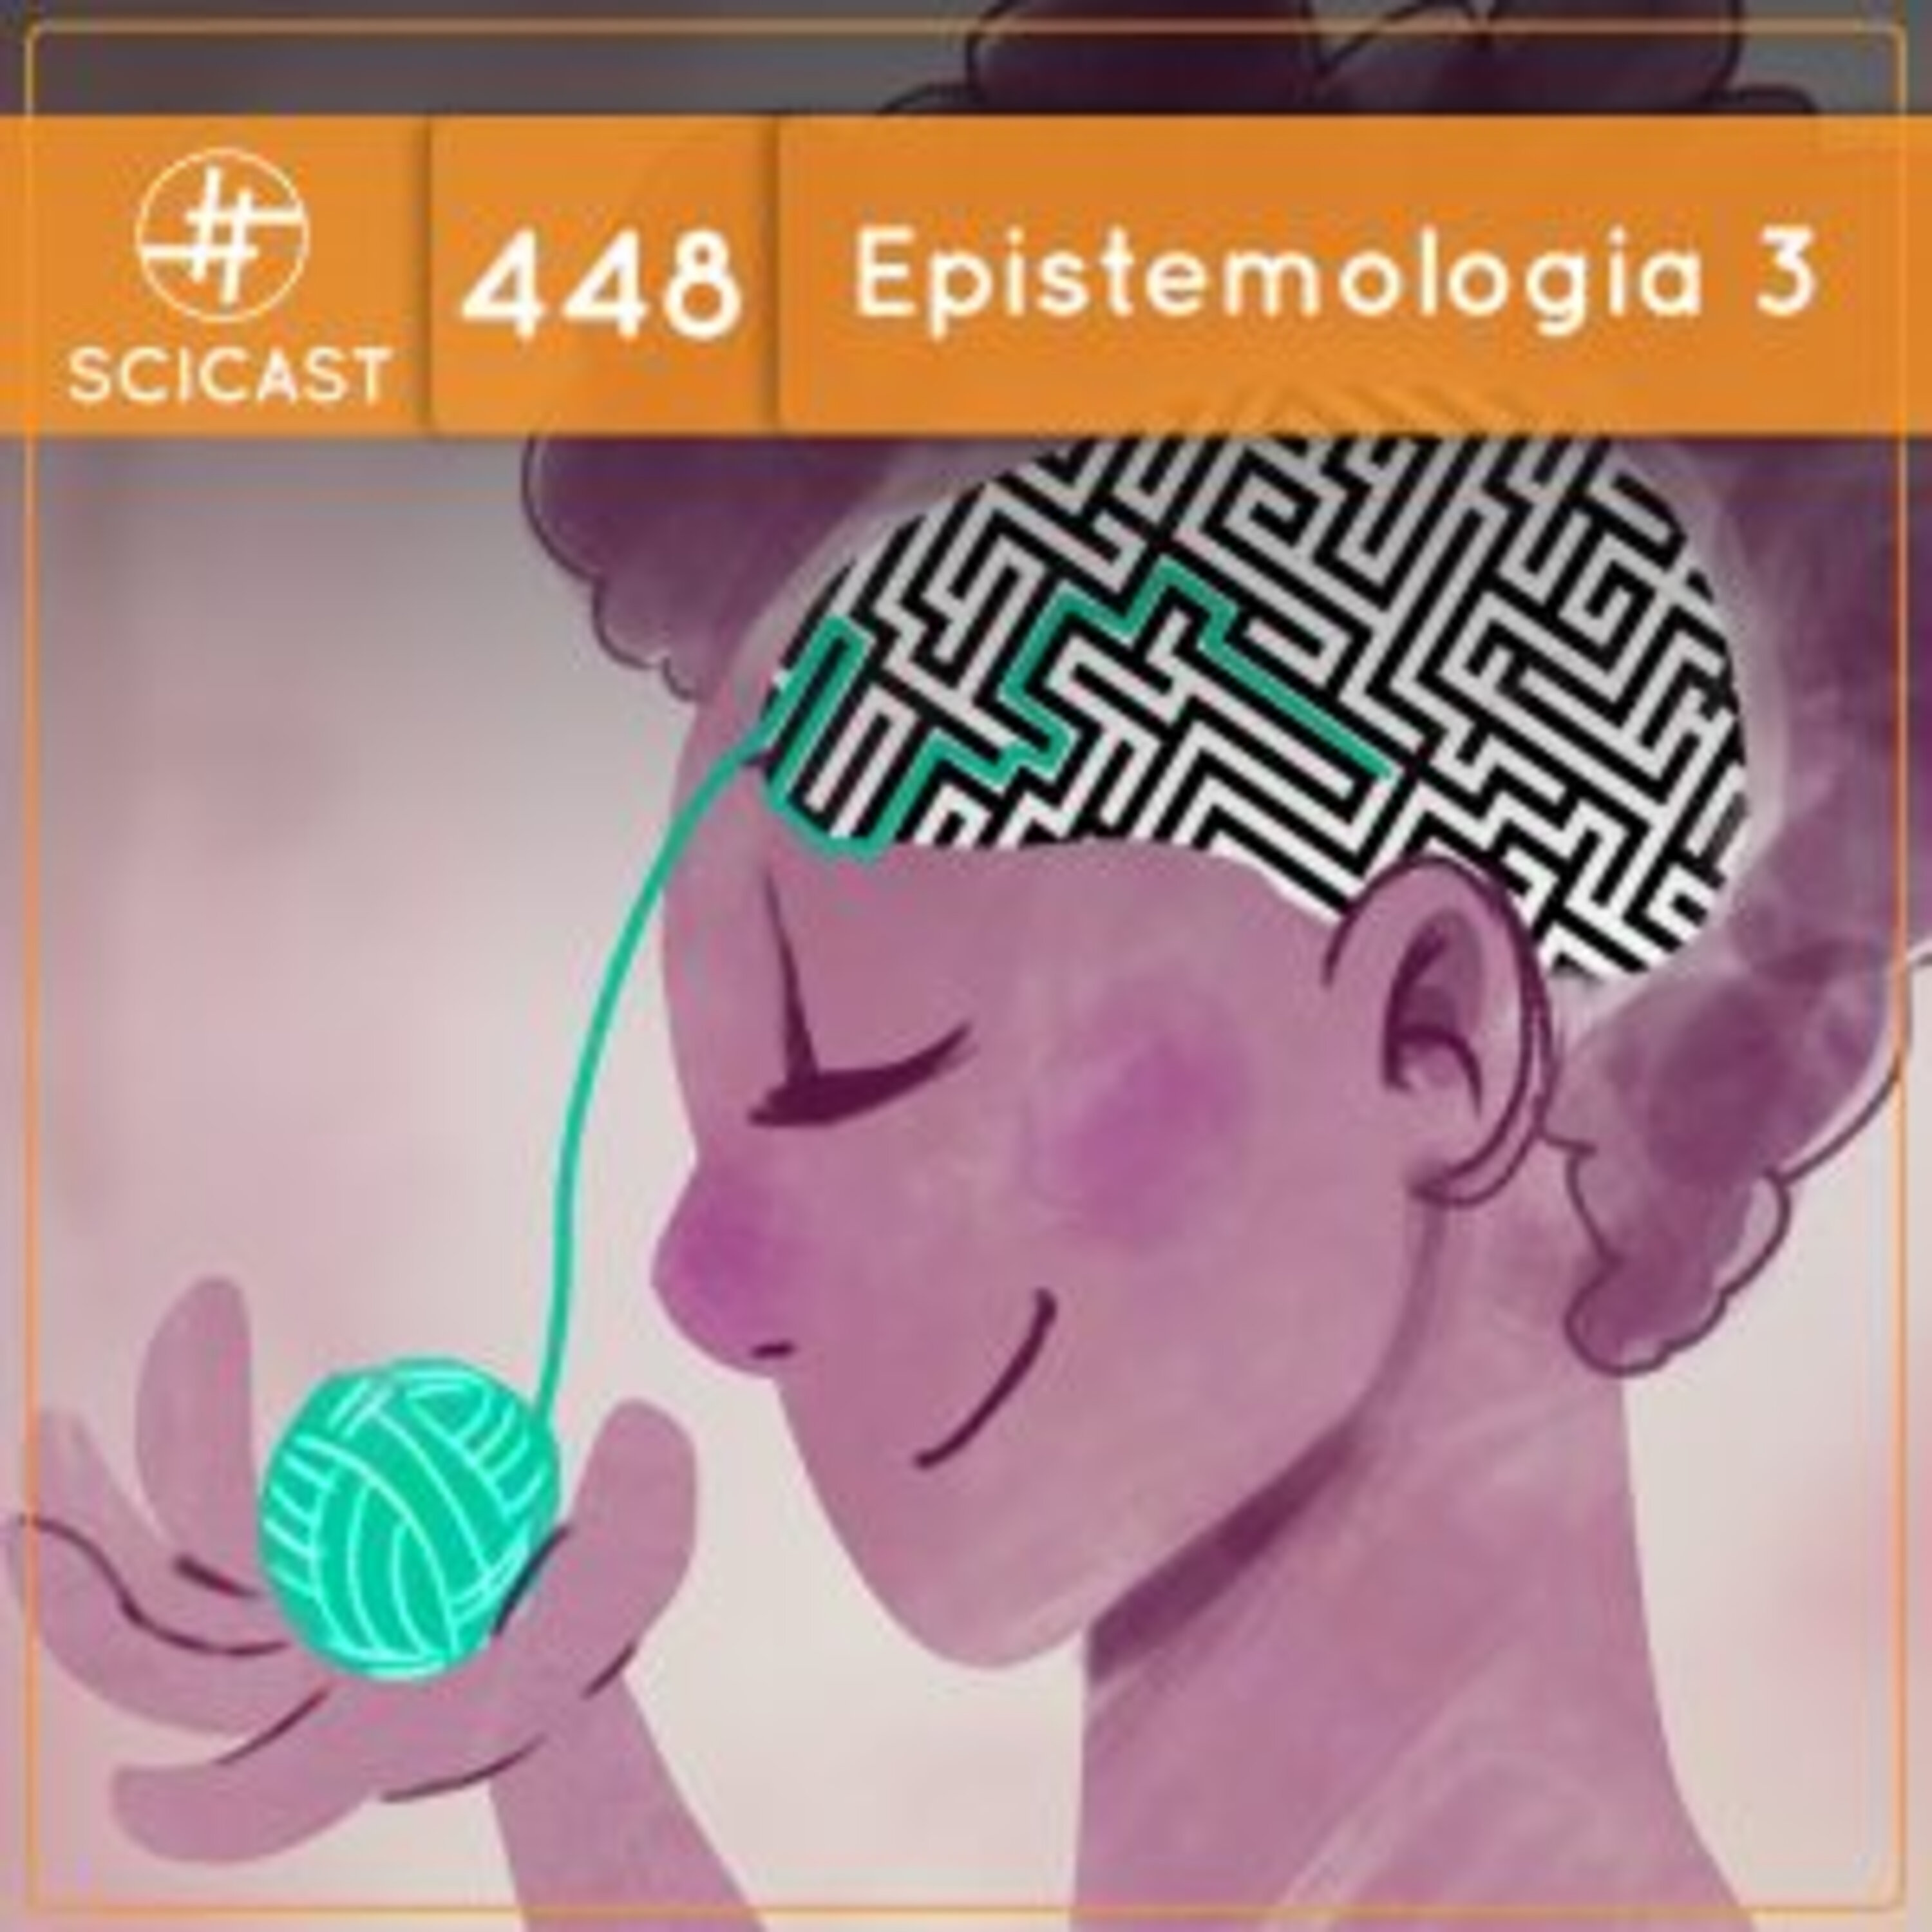 Epistemologia 3 (SciCast #448)